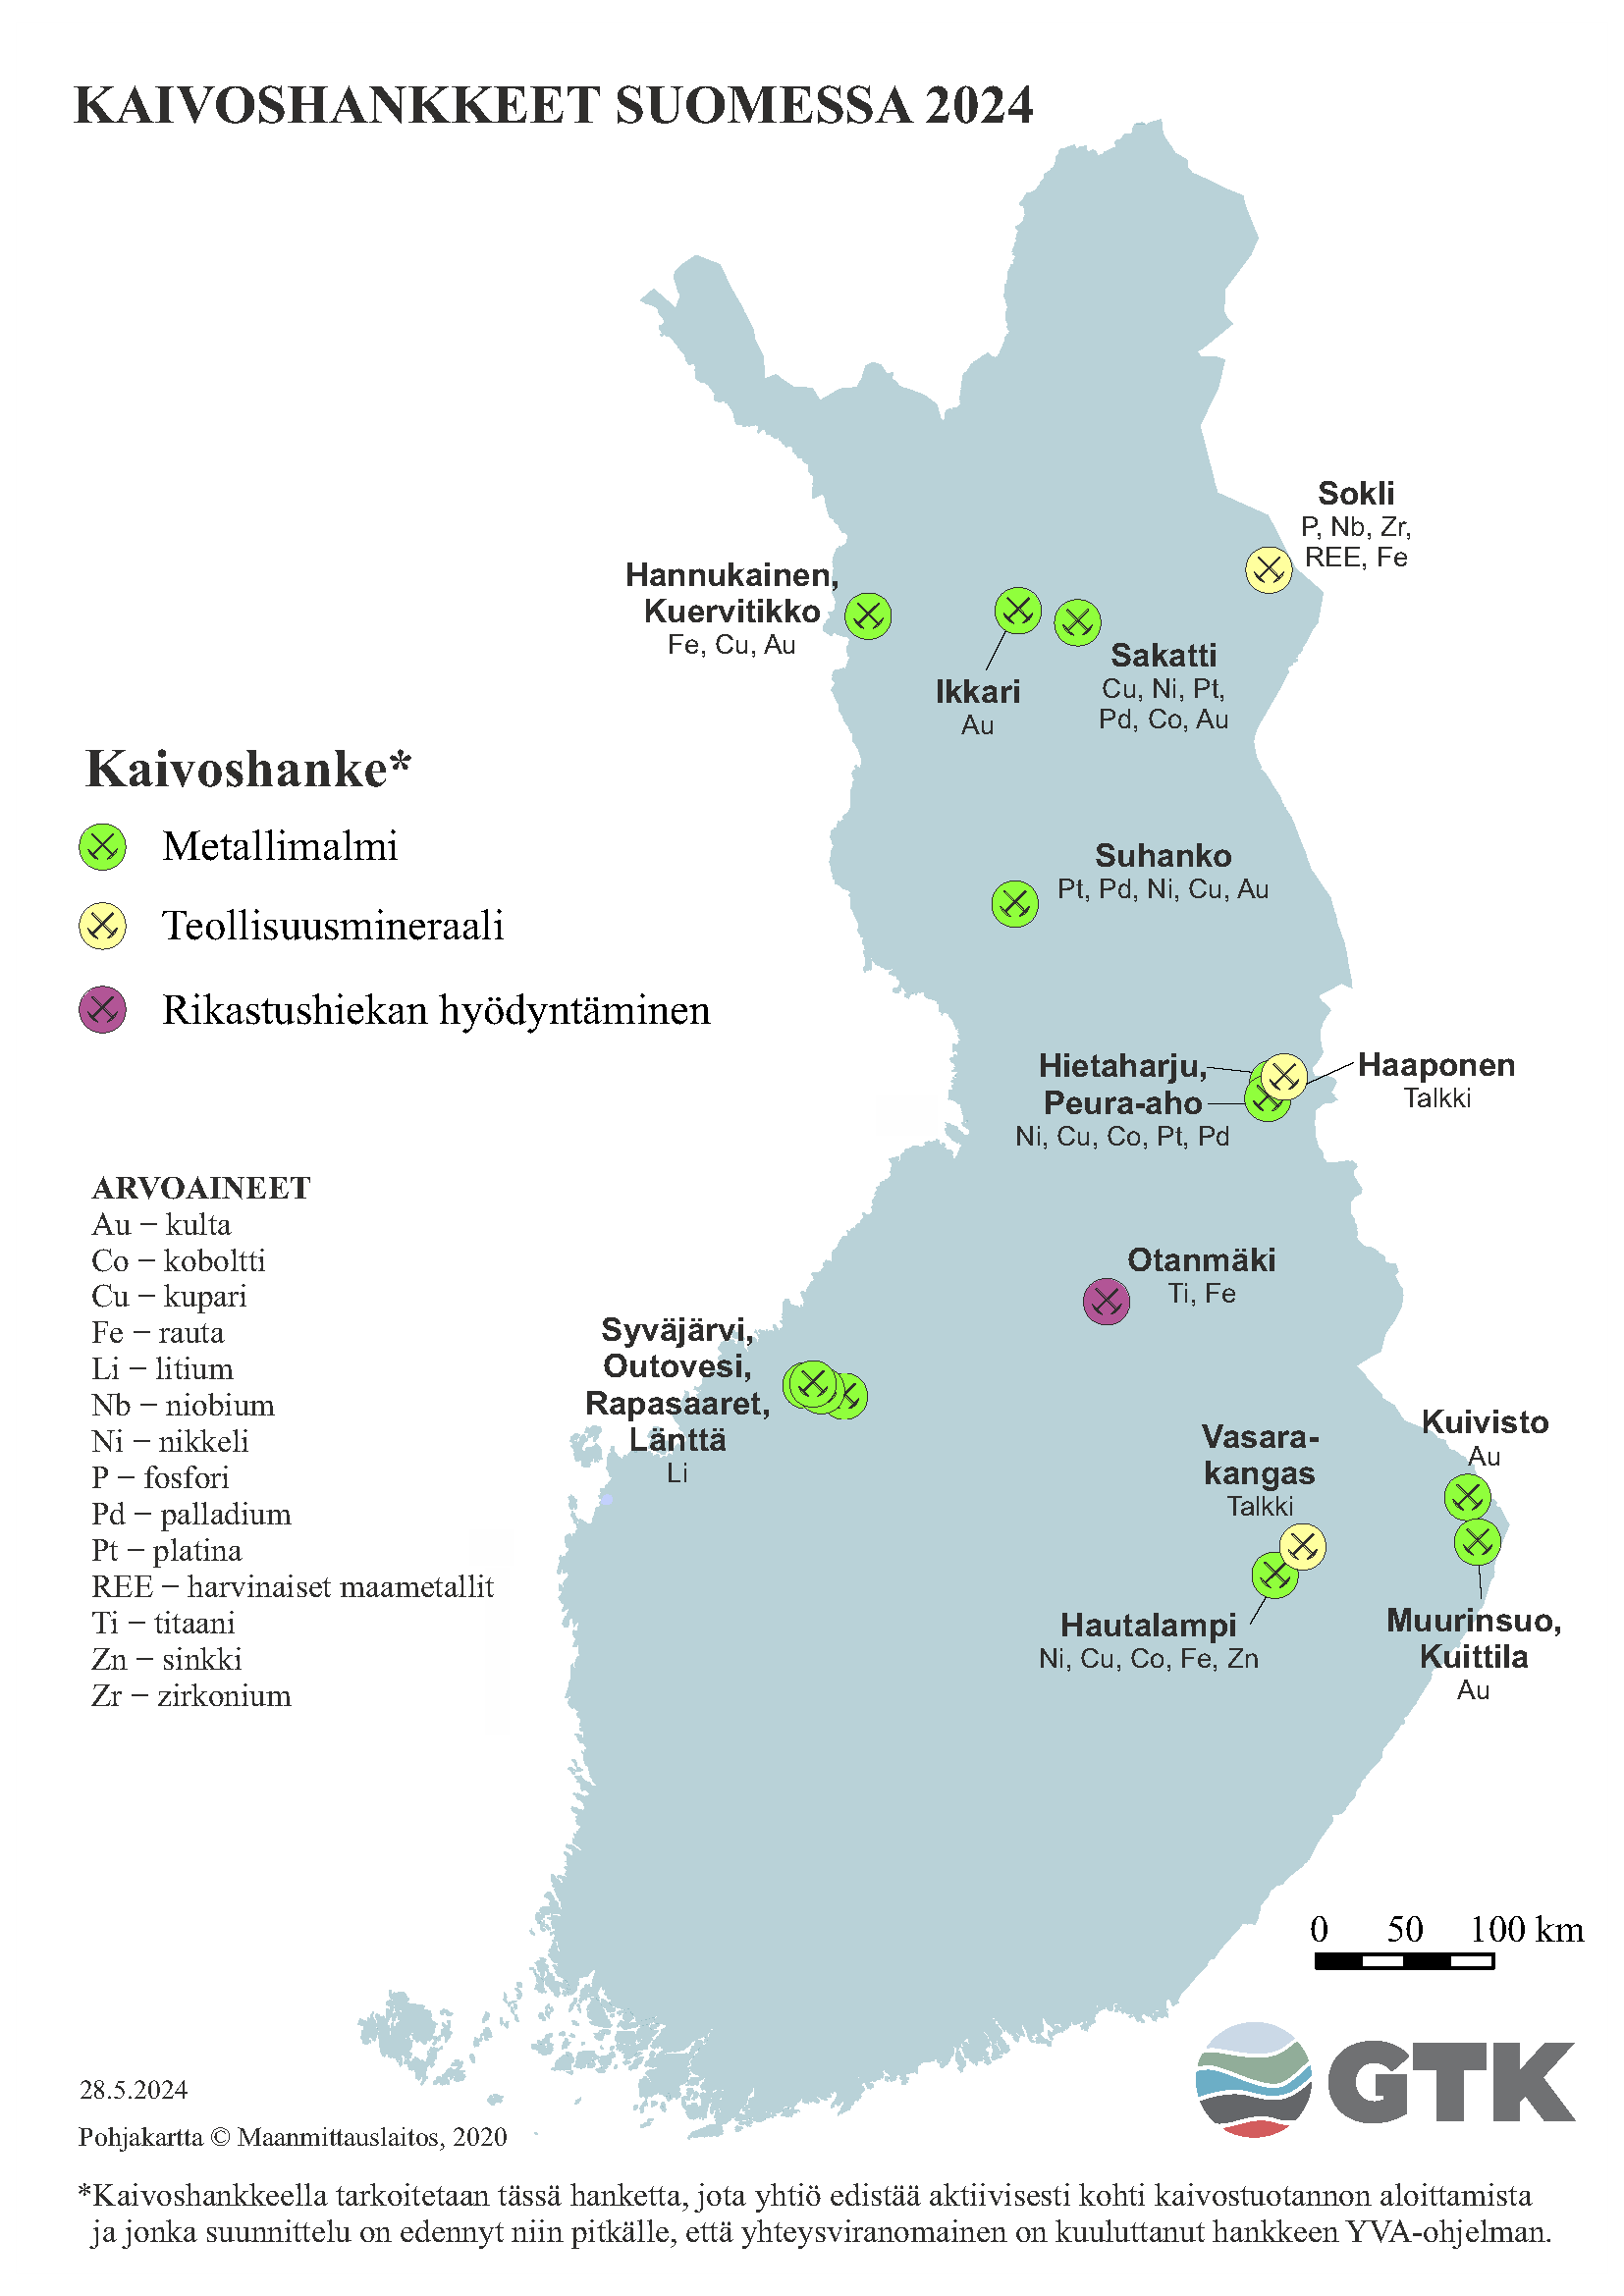 Suomen kartta, johon on merkattu kaivoshankkeet Suomessa vuonna 2024